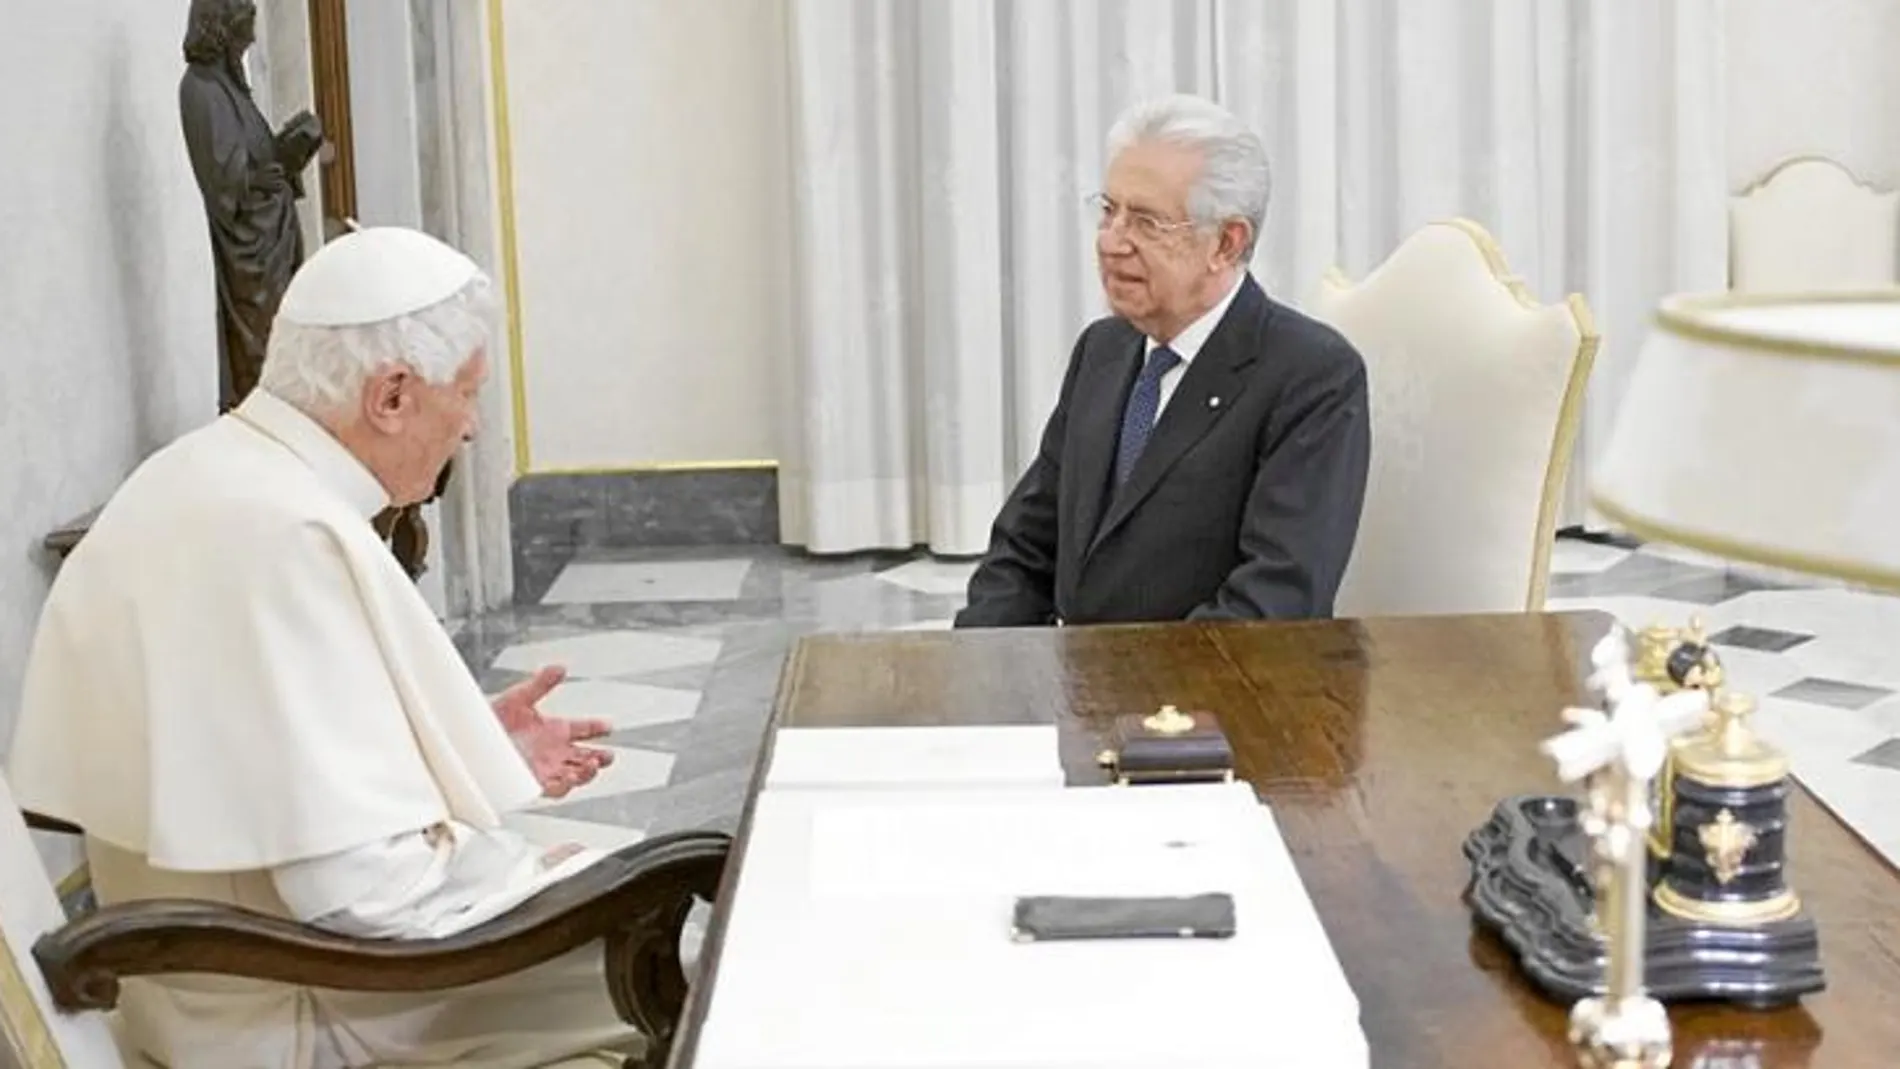 Mario Monti, en su reunión ayer con el Santo Padre en el Vaticano